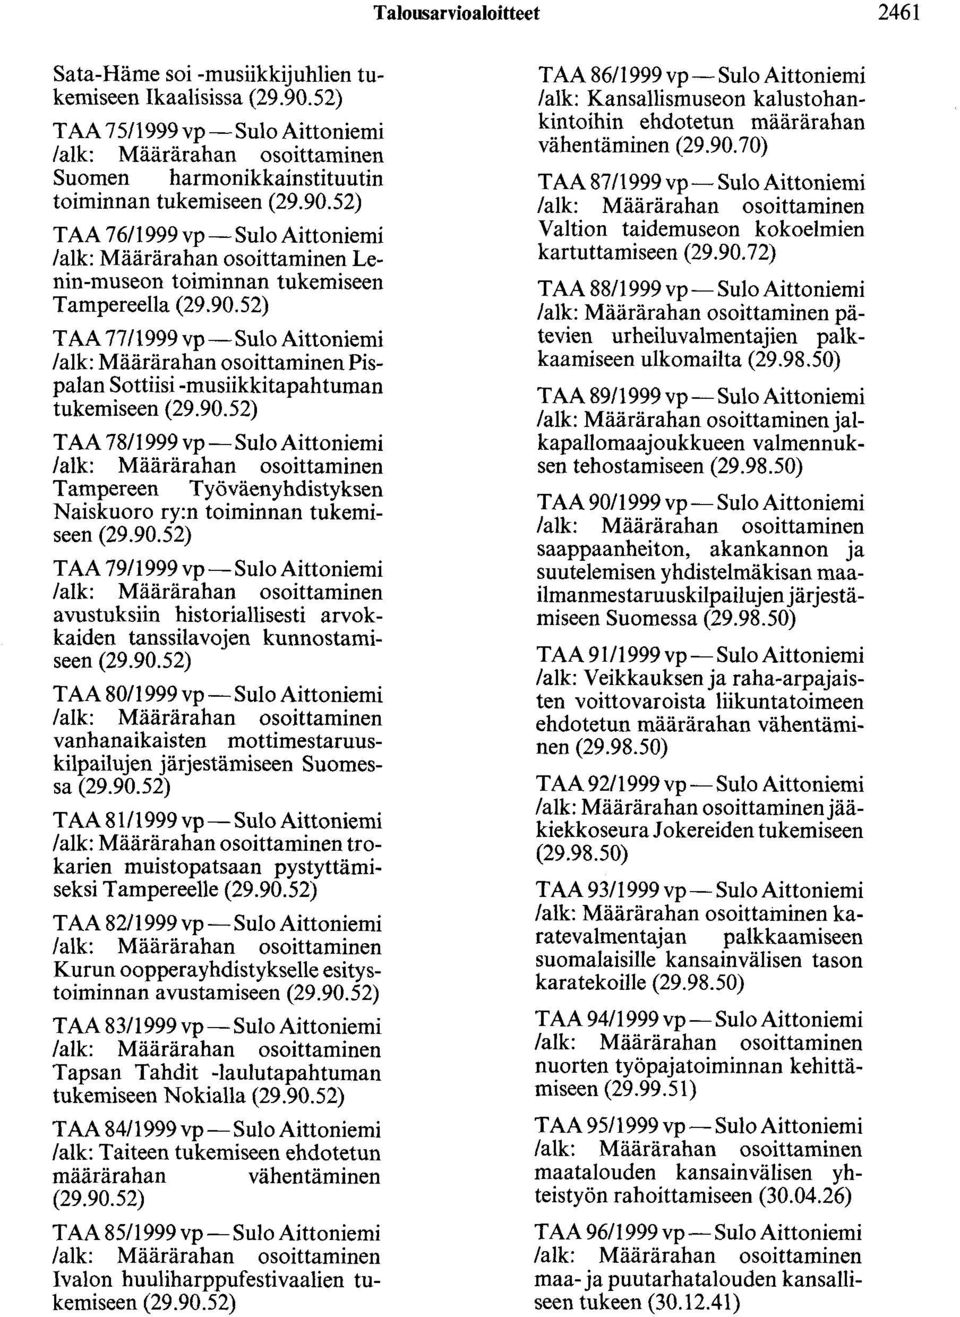 90.52) T AA 80/1999 vp-sulo Aittoniemi vanhanaikaisten mottimestaruuskilpai1ujen järjestämiseen Suomessa (29.90.52) T AA 81/1999 vp-sulo Aittoniemi trokarien muistopatsaan pystyttämiseksi Tampereelle (29.